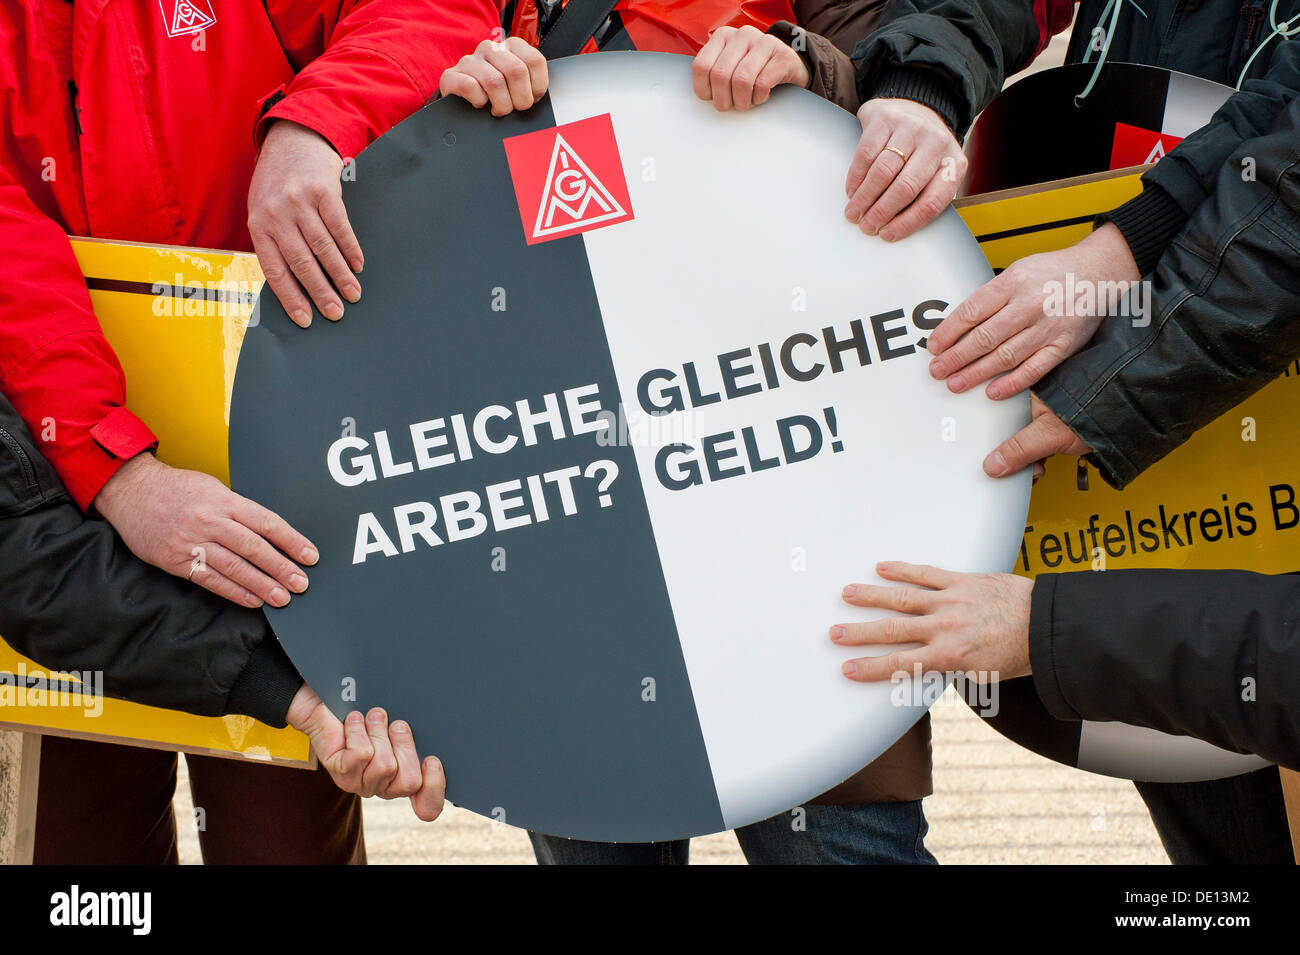 Hands holding sign : 'Gleiche Arbeit ? Gleiches Geld !', l'allemand pour "même travail ? L'égalité de rémunération !', journée d'action contre l'aide temporaire Banque D'Images